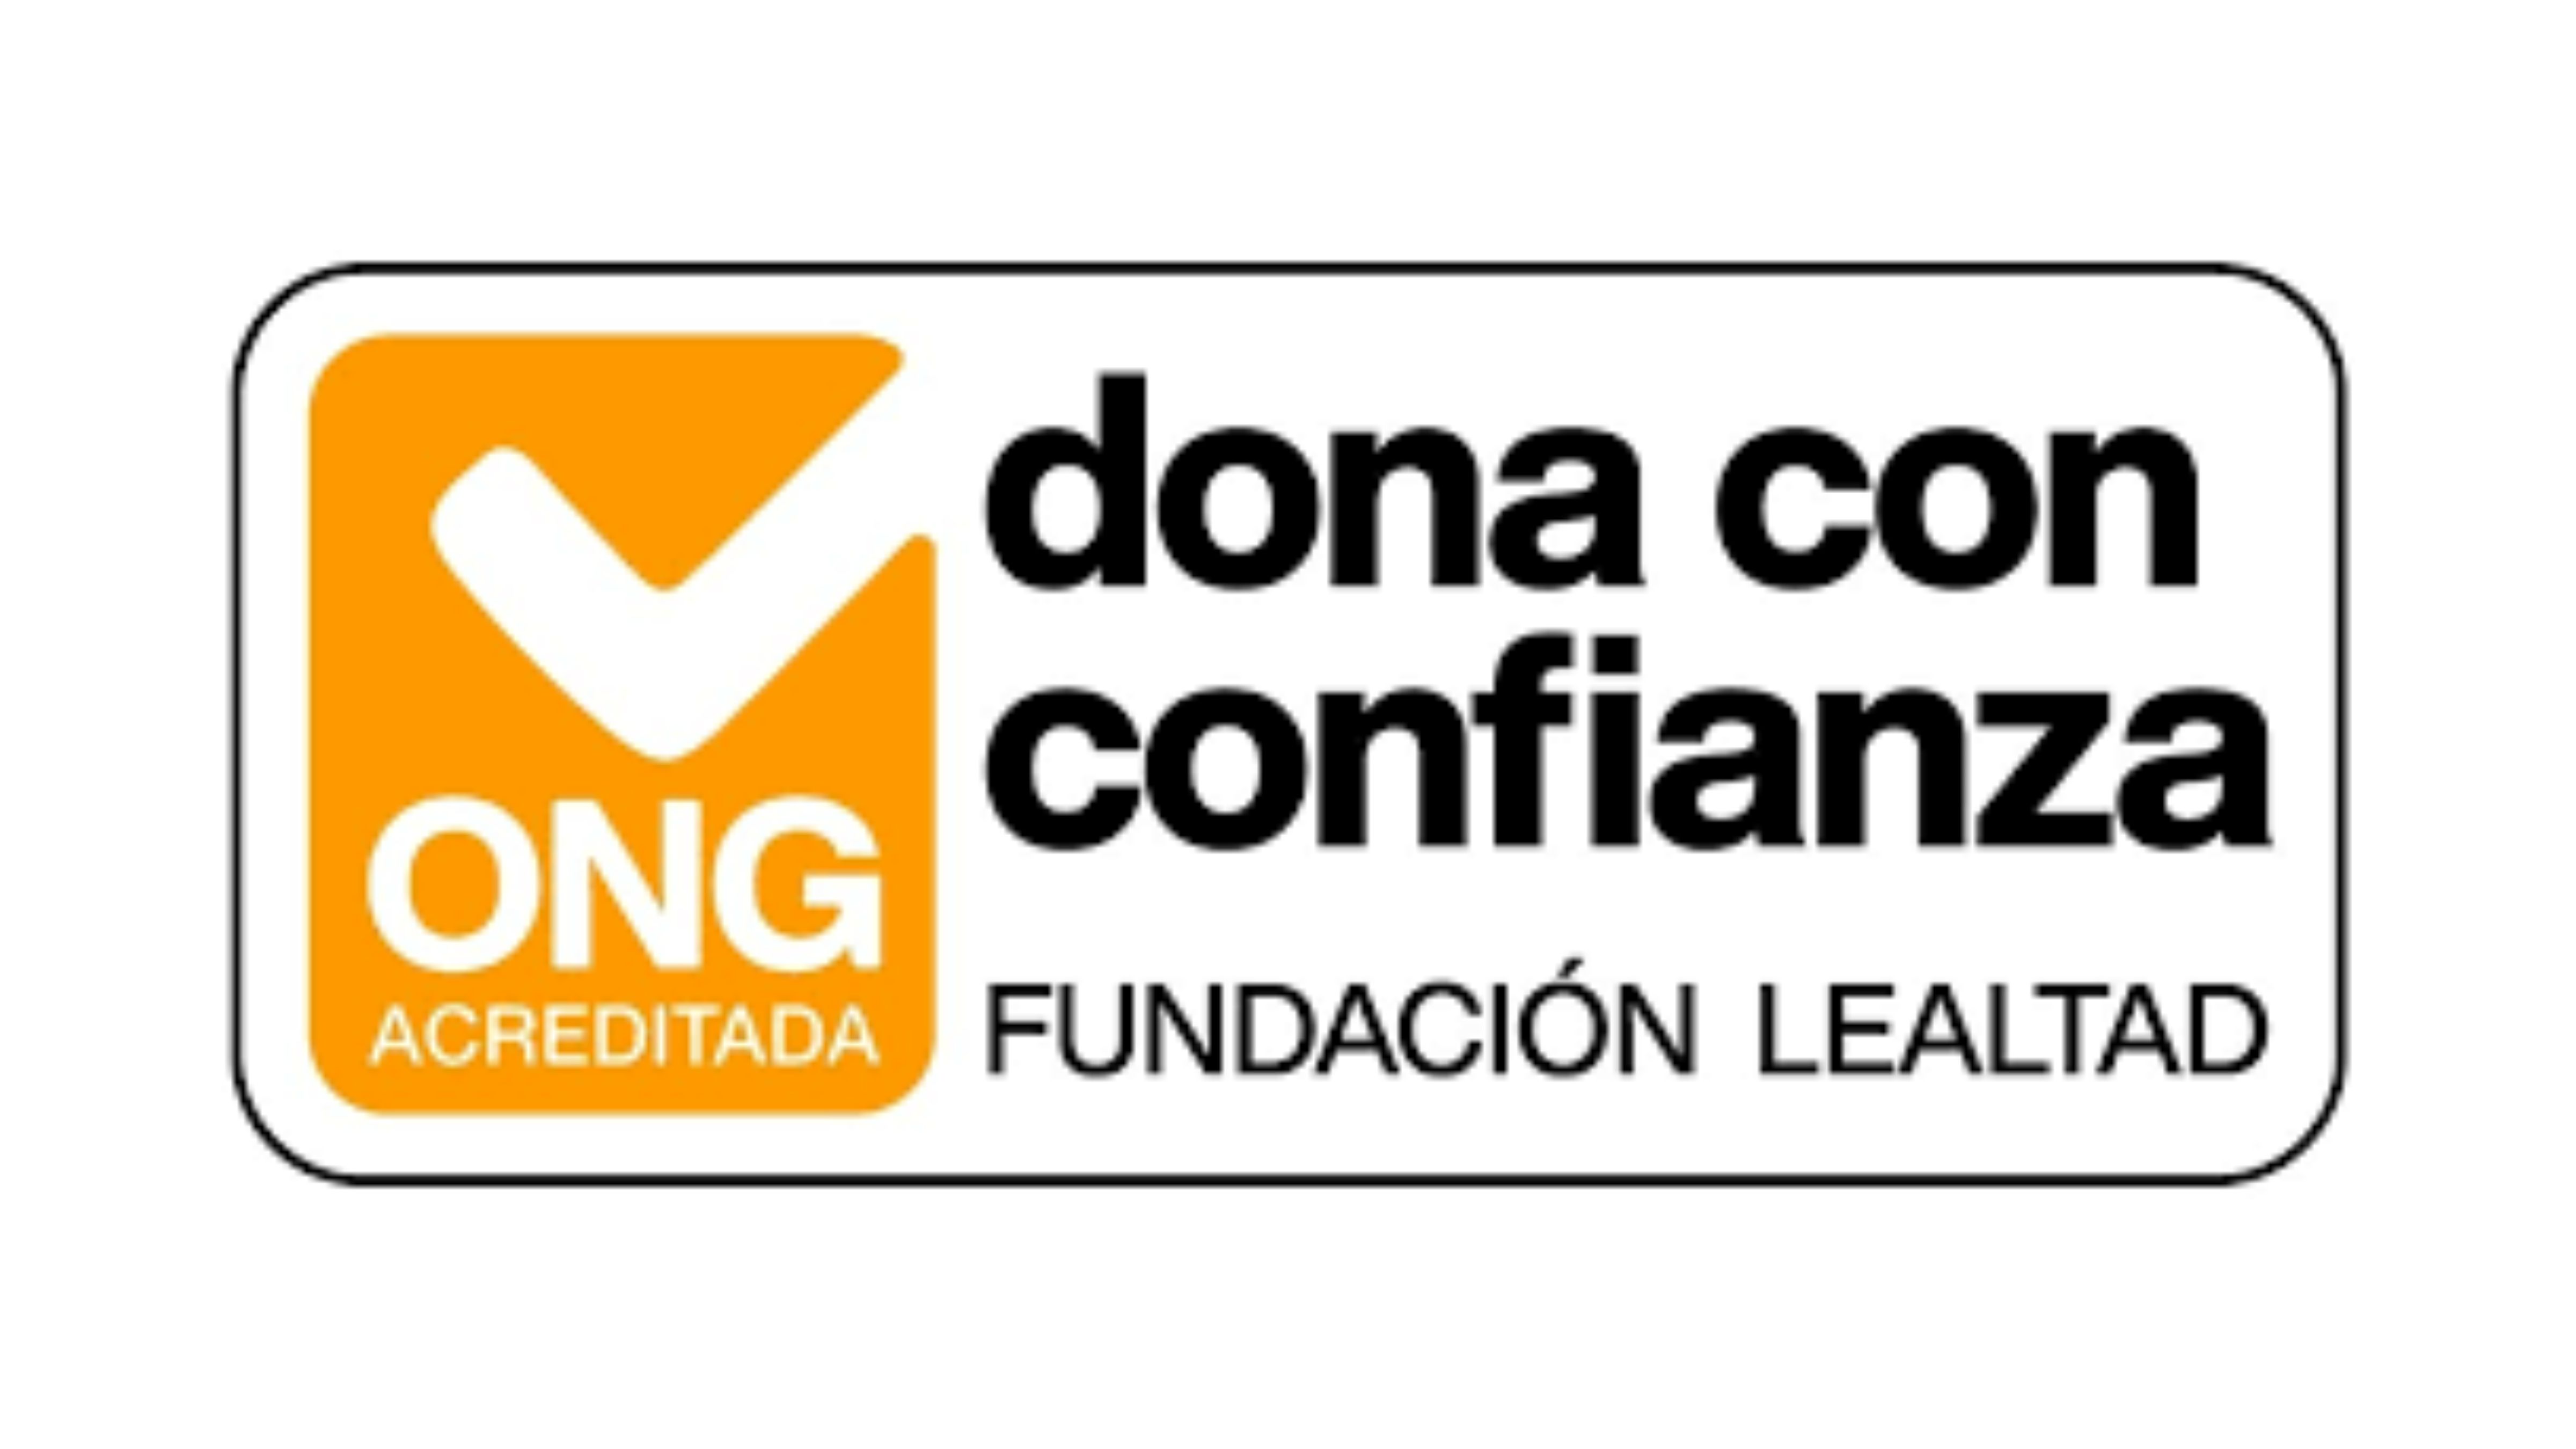 Logo de ONG acreditada por la Fundación Lealtad como 'Dona con confianza'.